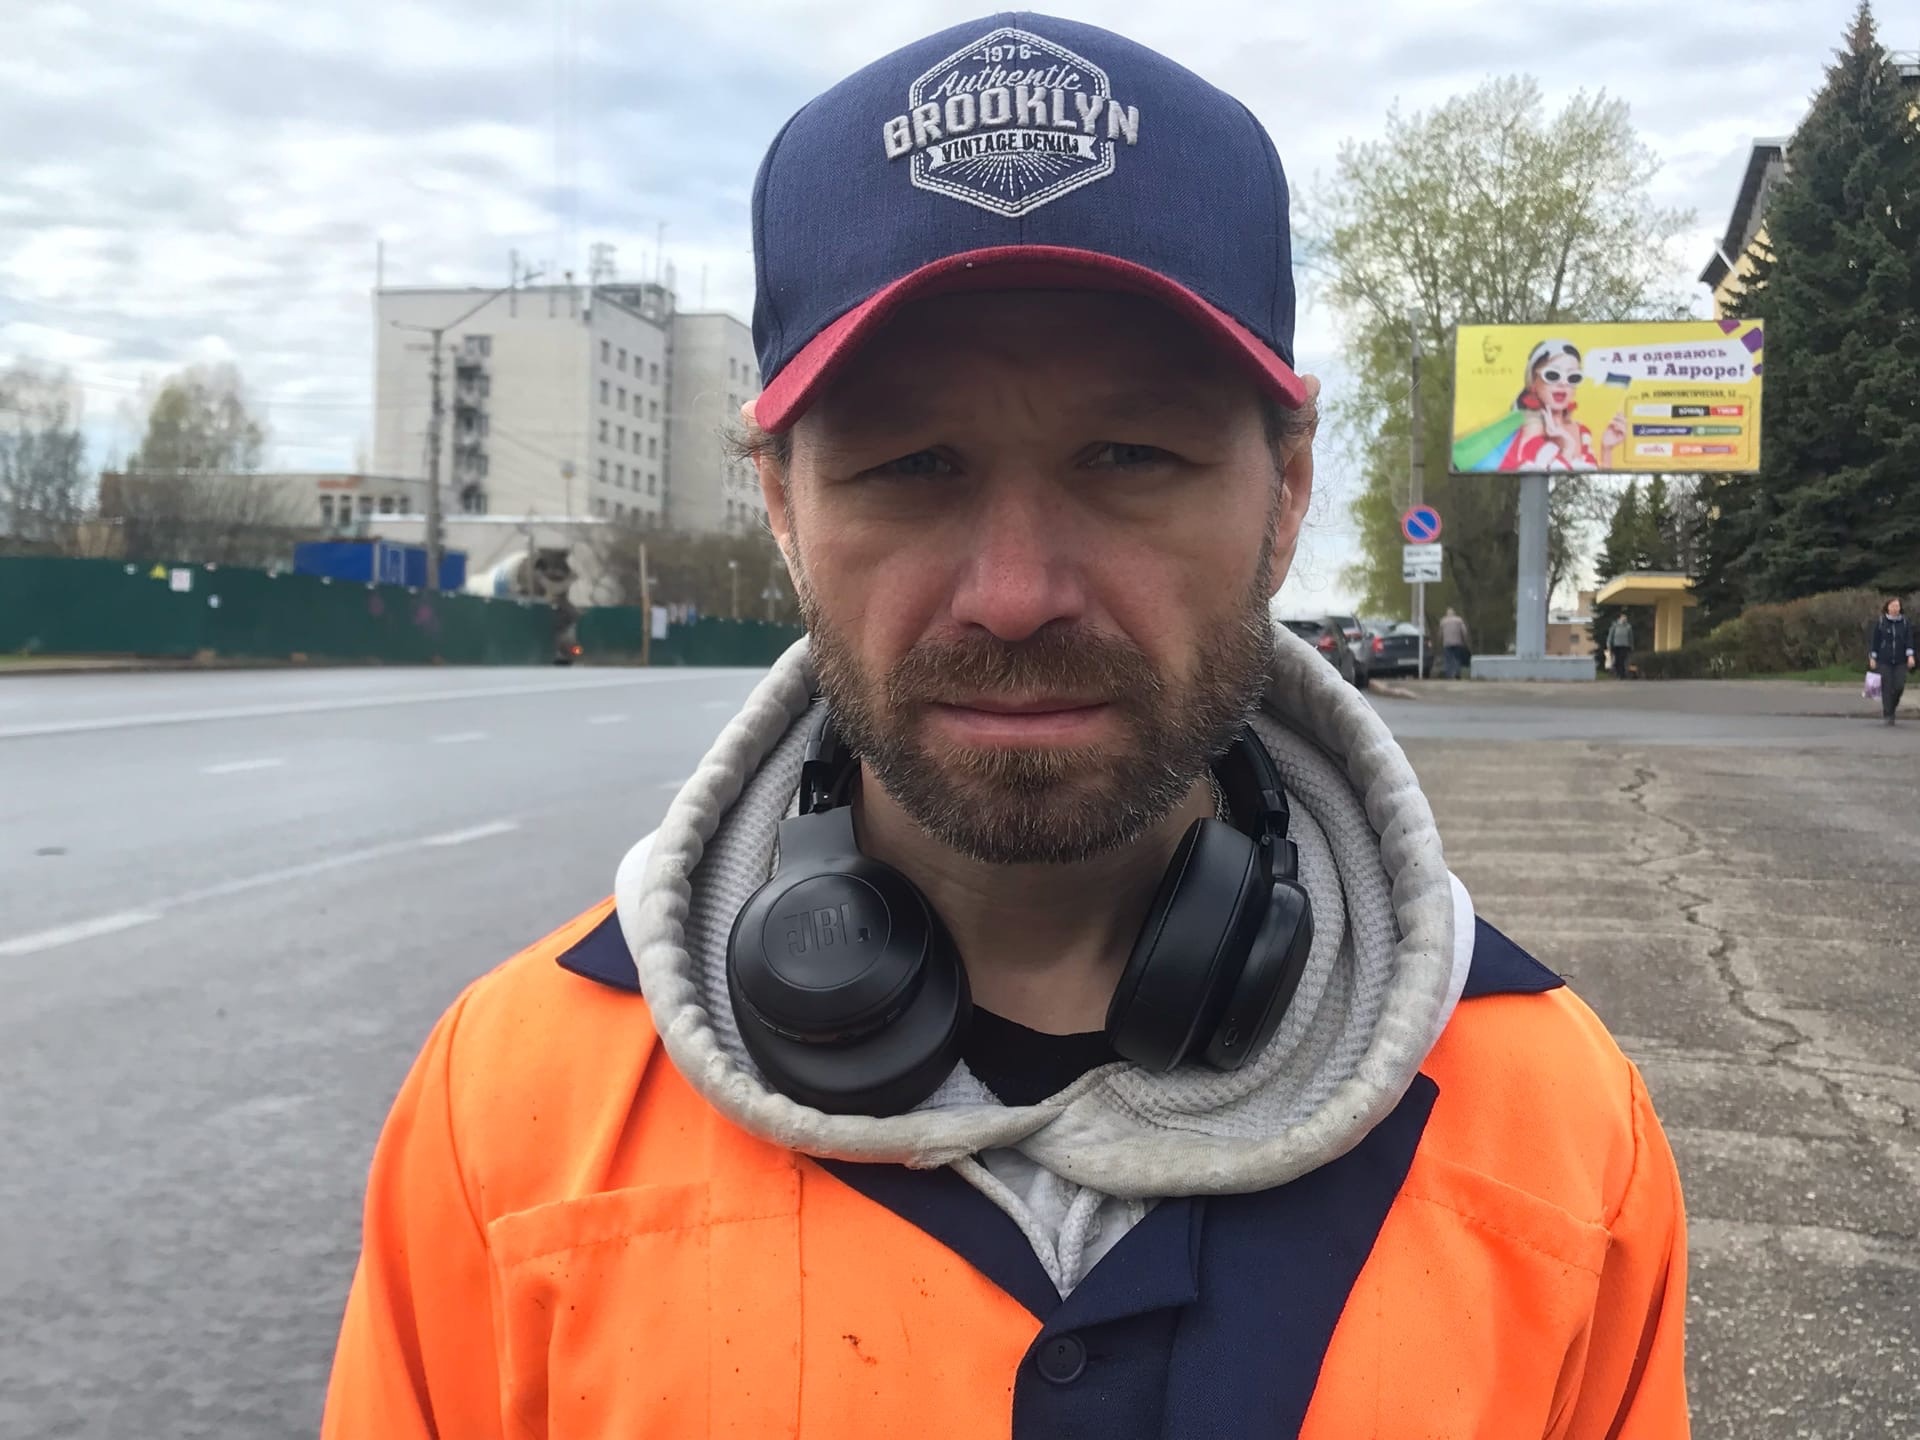 "Нормальный человек не мусорит": сыктывкарский дворник о работе, улицах и пьяных